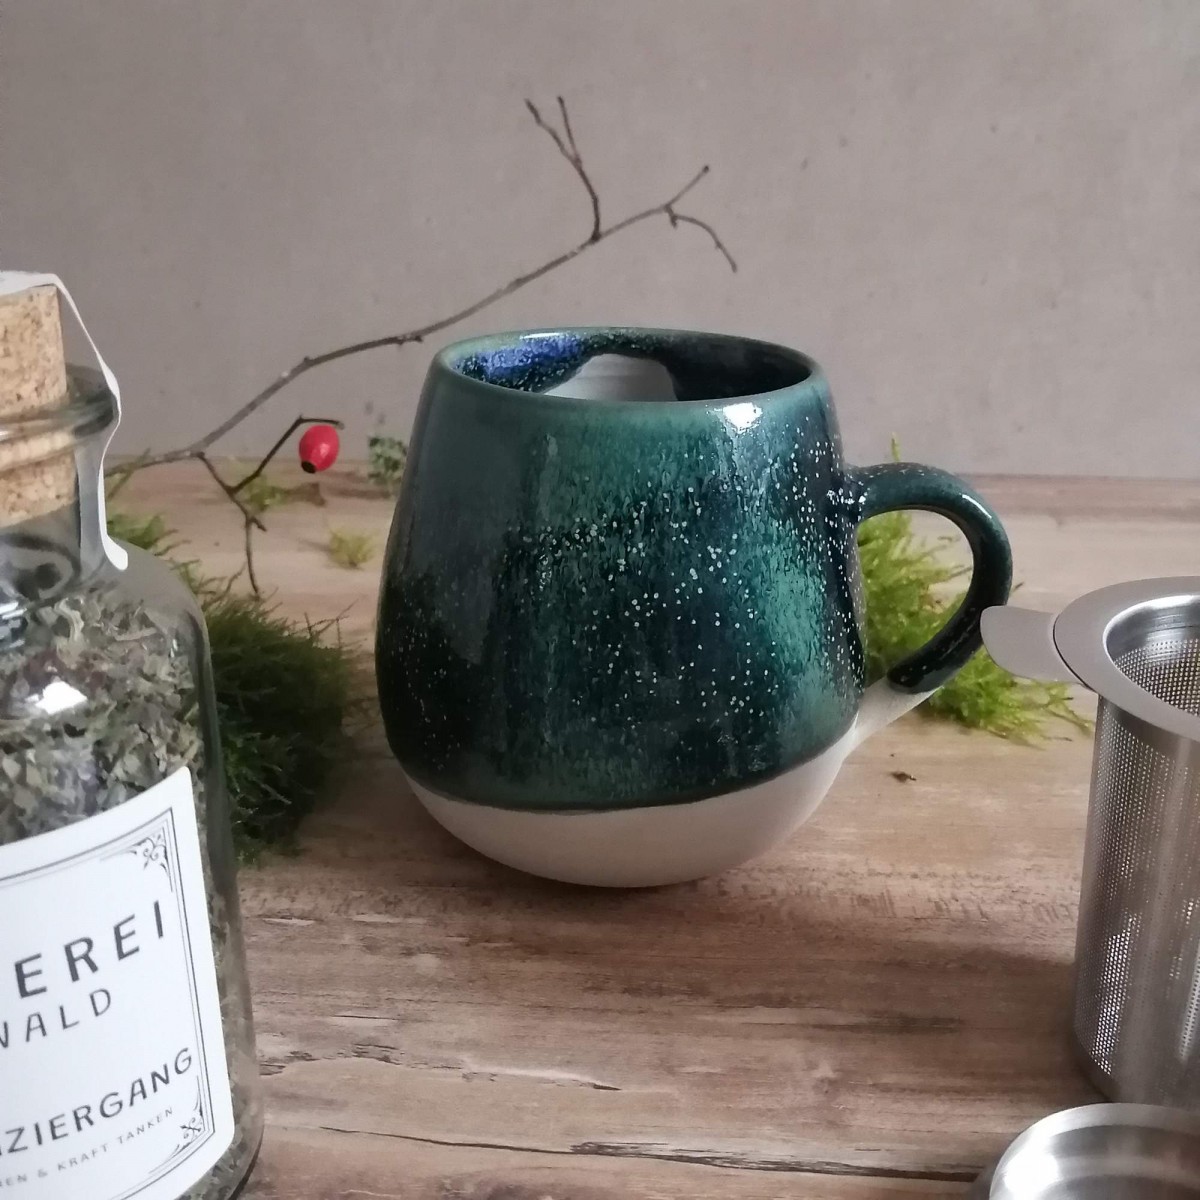 Geschenkset "Teemomente" - Kräutertee, Tee & handgetöpferte Tasse | Töpferei am Wald